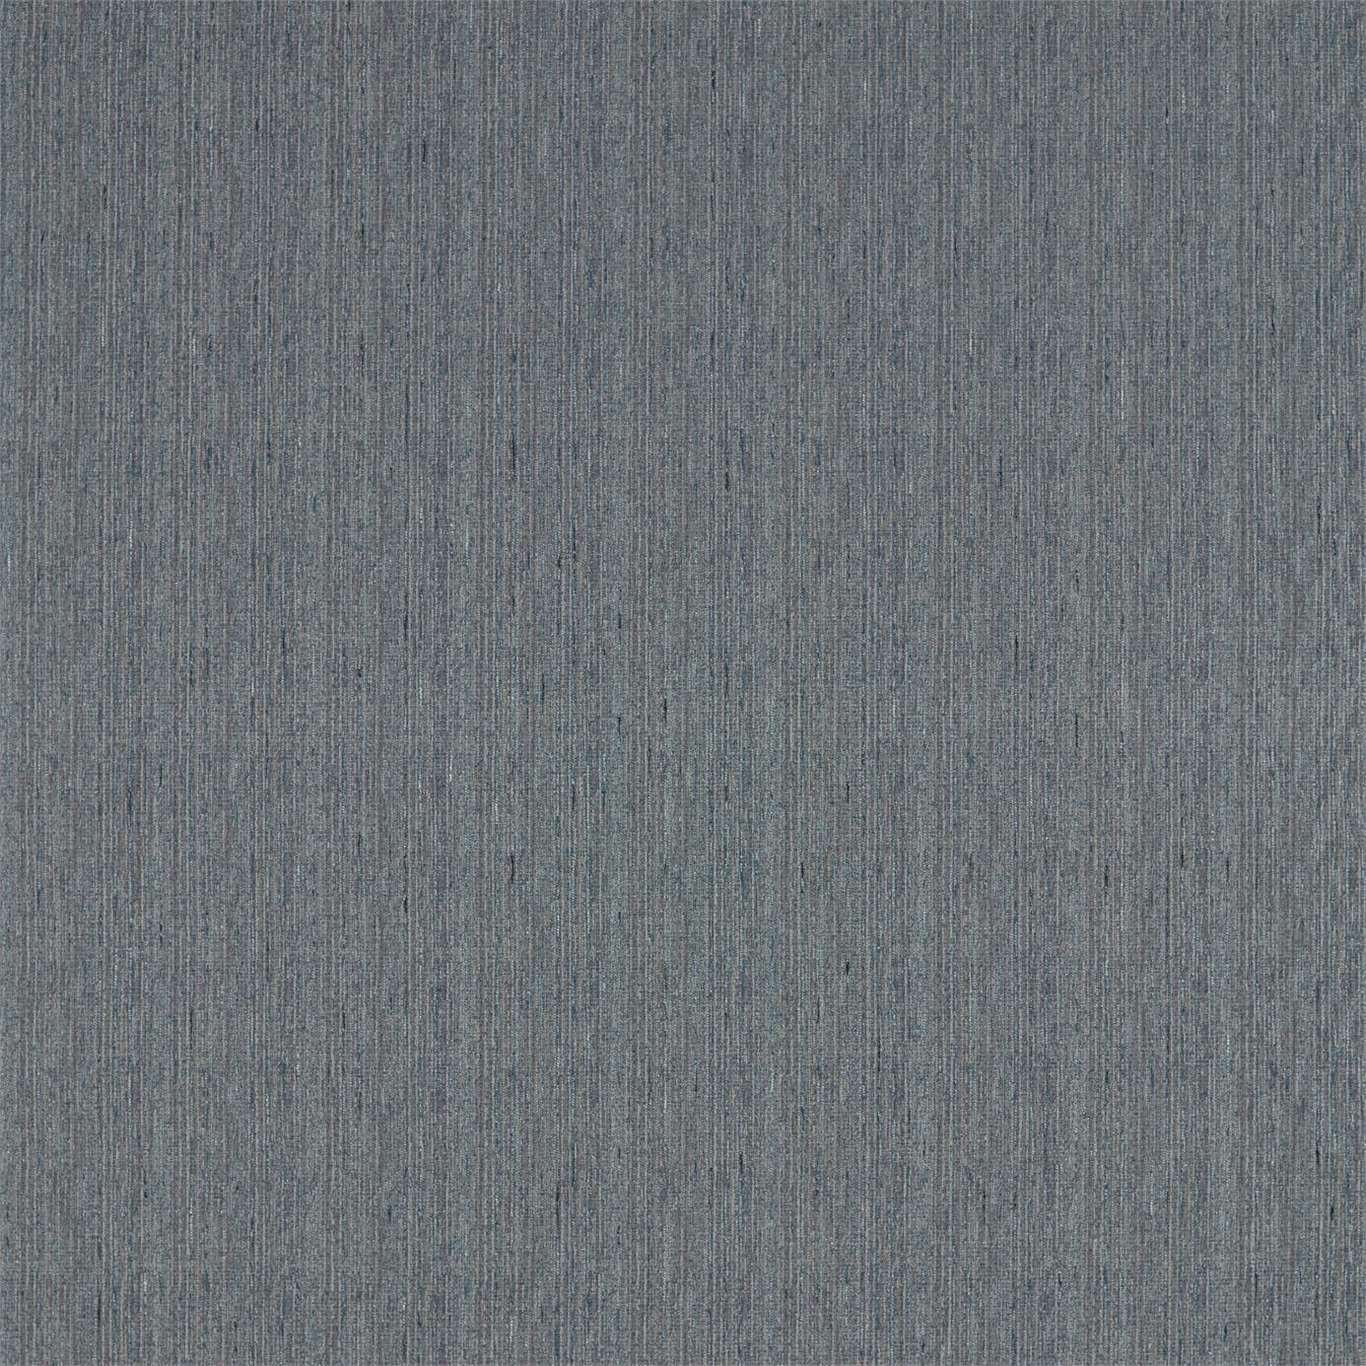 Spindlestone Denim Fabric by SAN